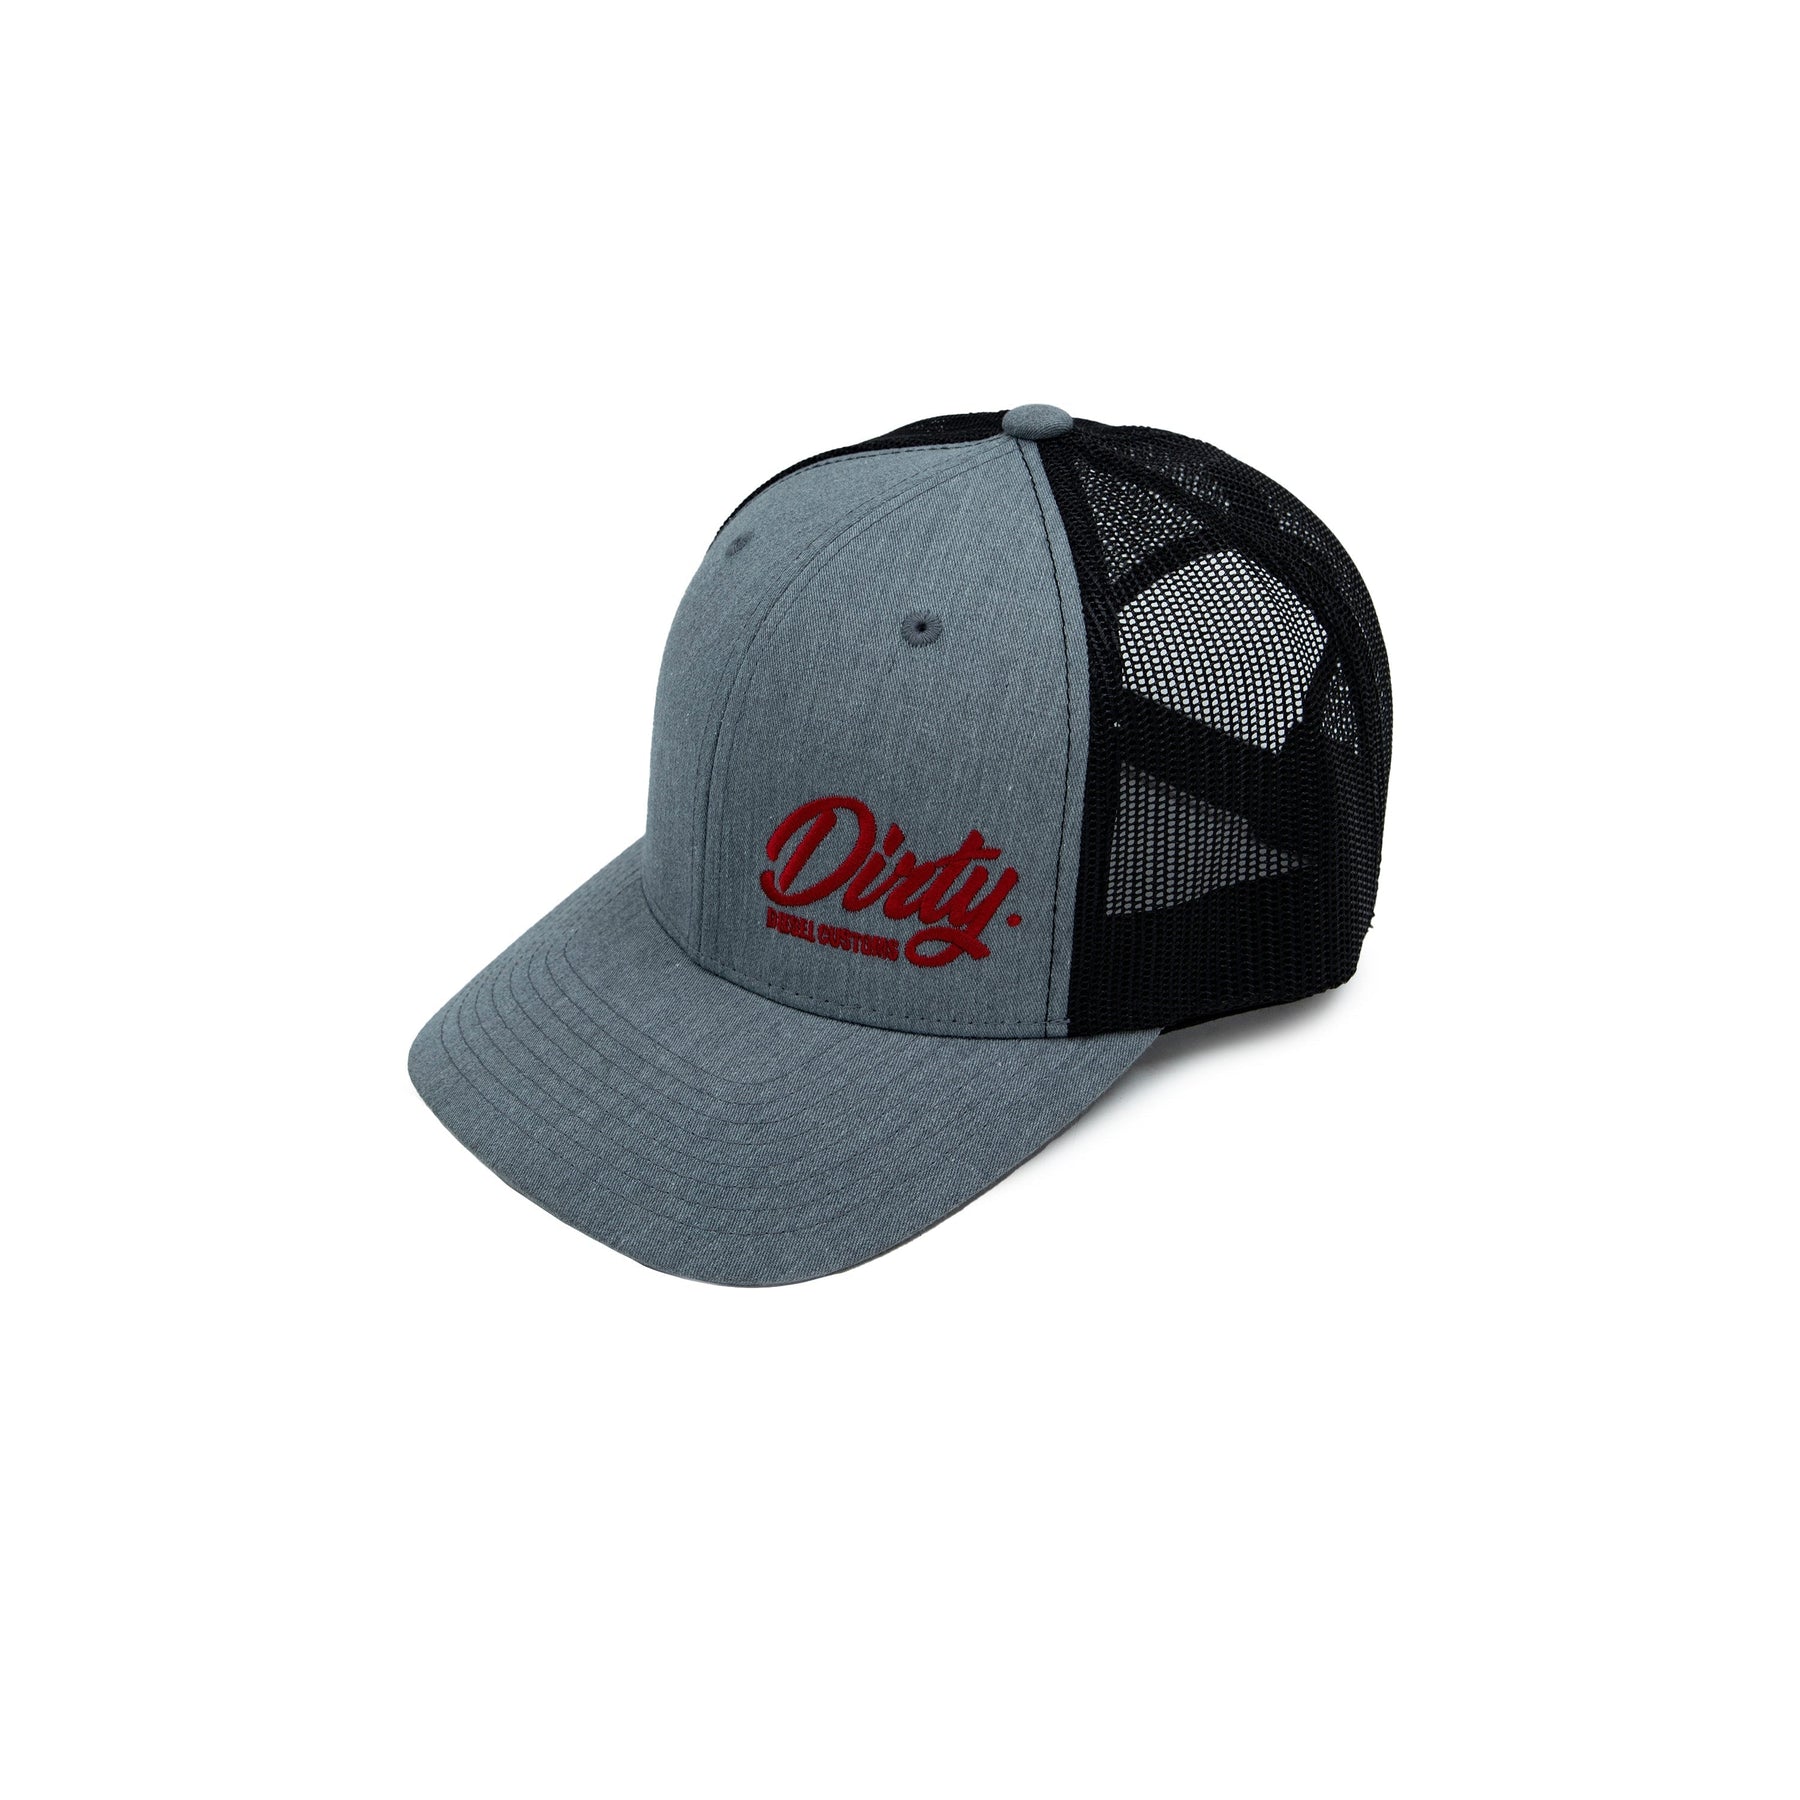 Dirty Diesel Snapback Hat-Hat-Dirty Diesel Customs-Dirty Diesel Customs